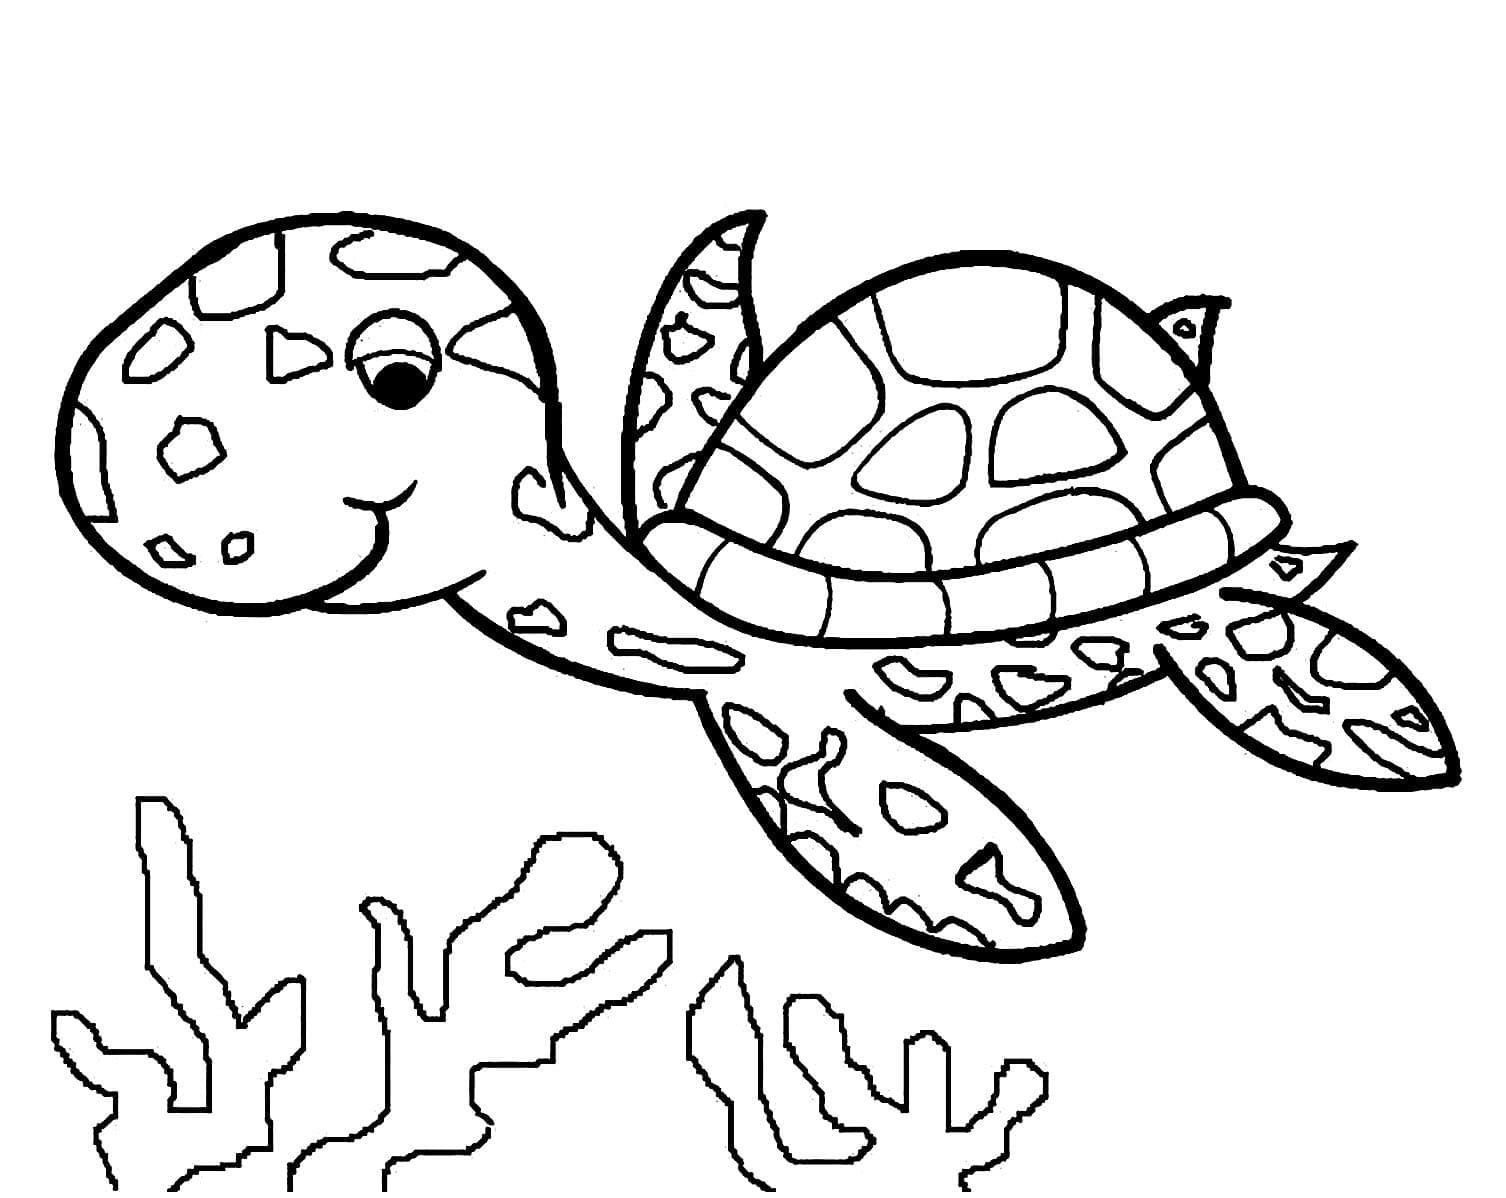 바다거북 이미지 coloring page